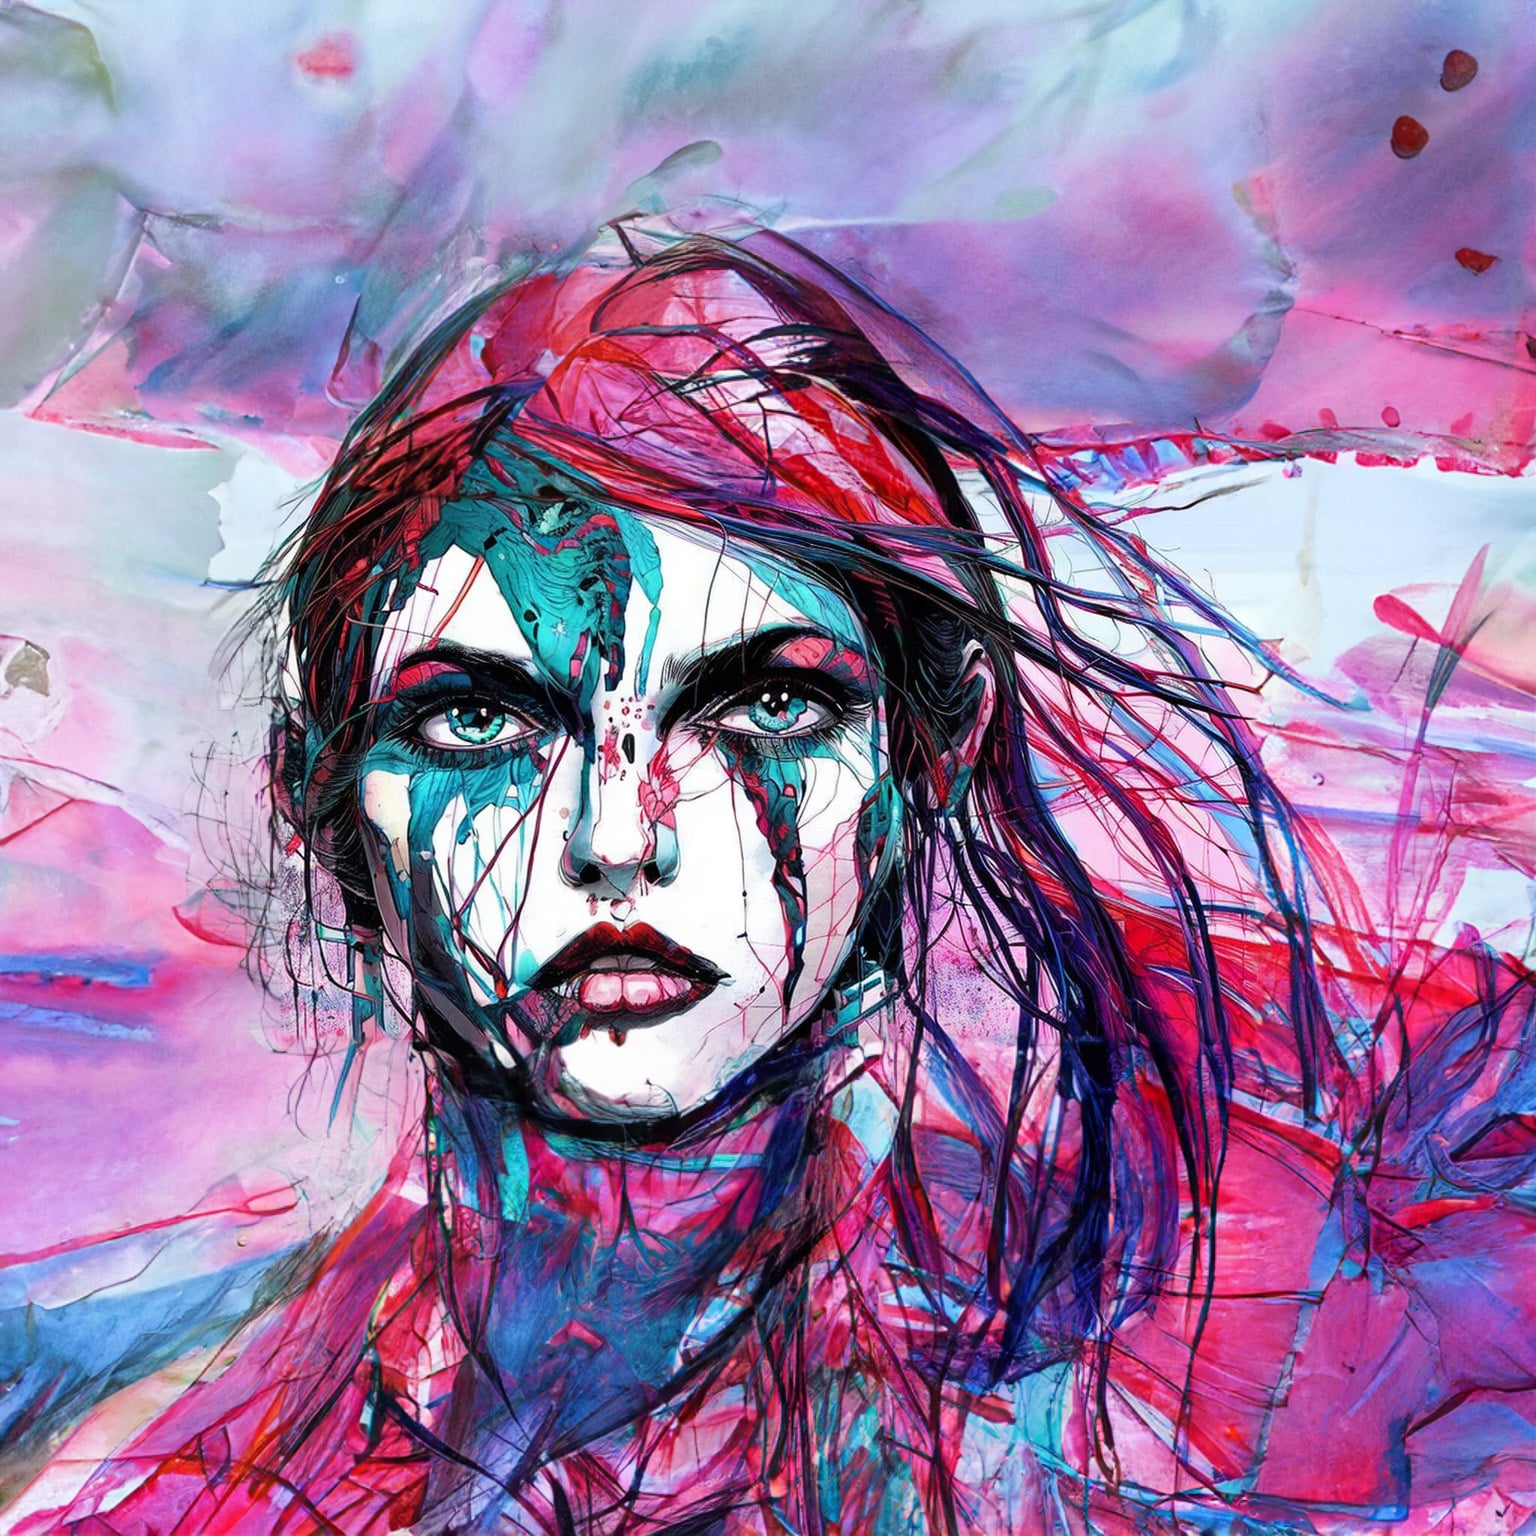 Ein KI Bild von einem Portrait einer abstrakt gemalten Frau